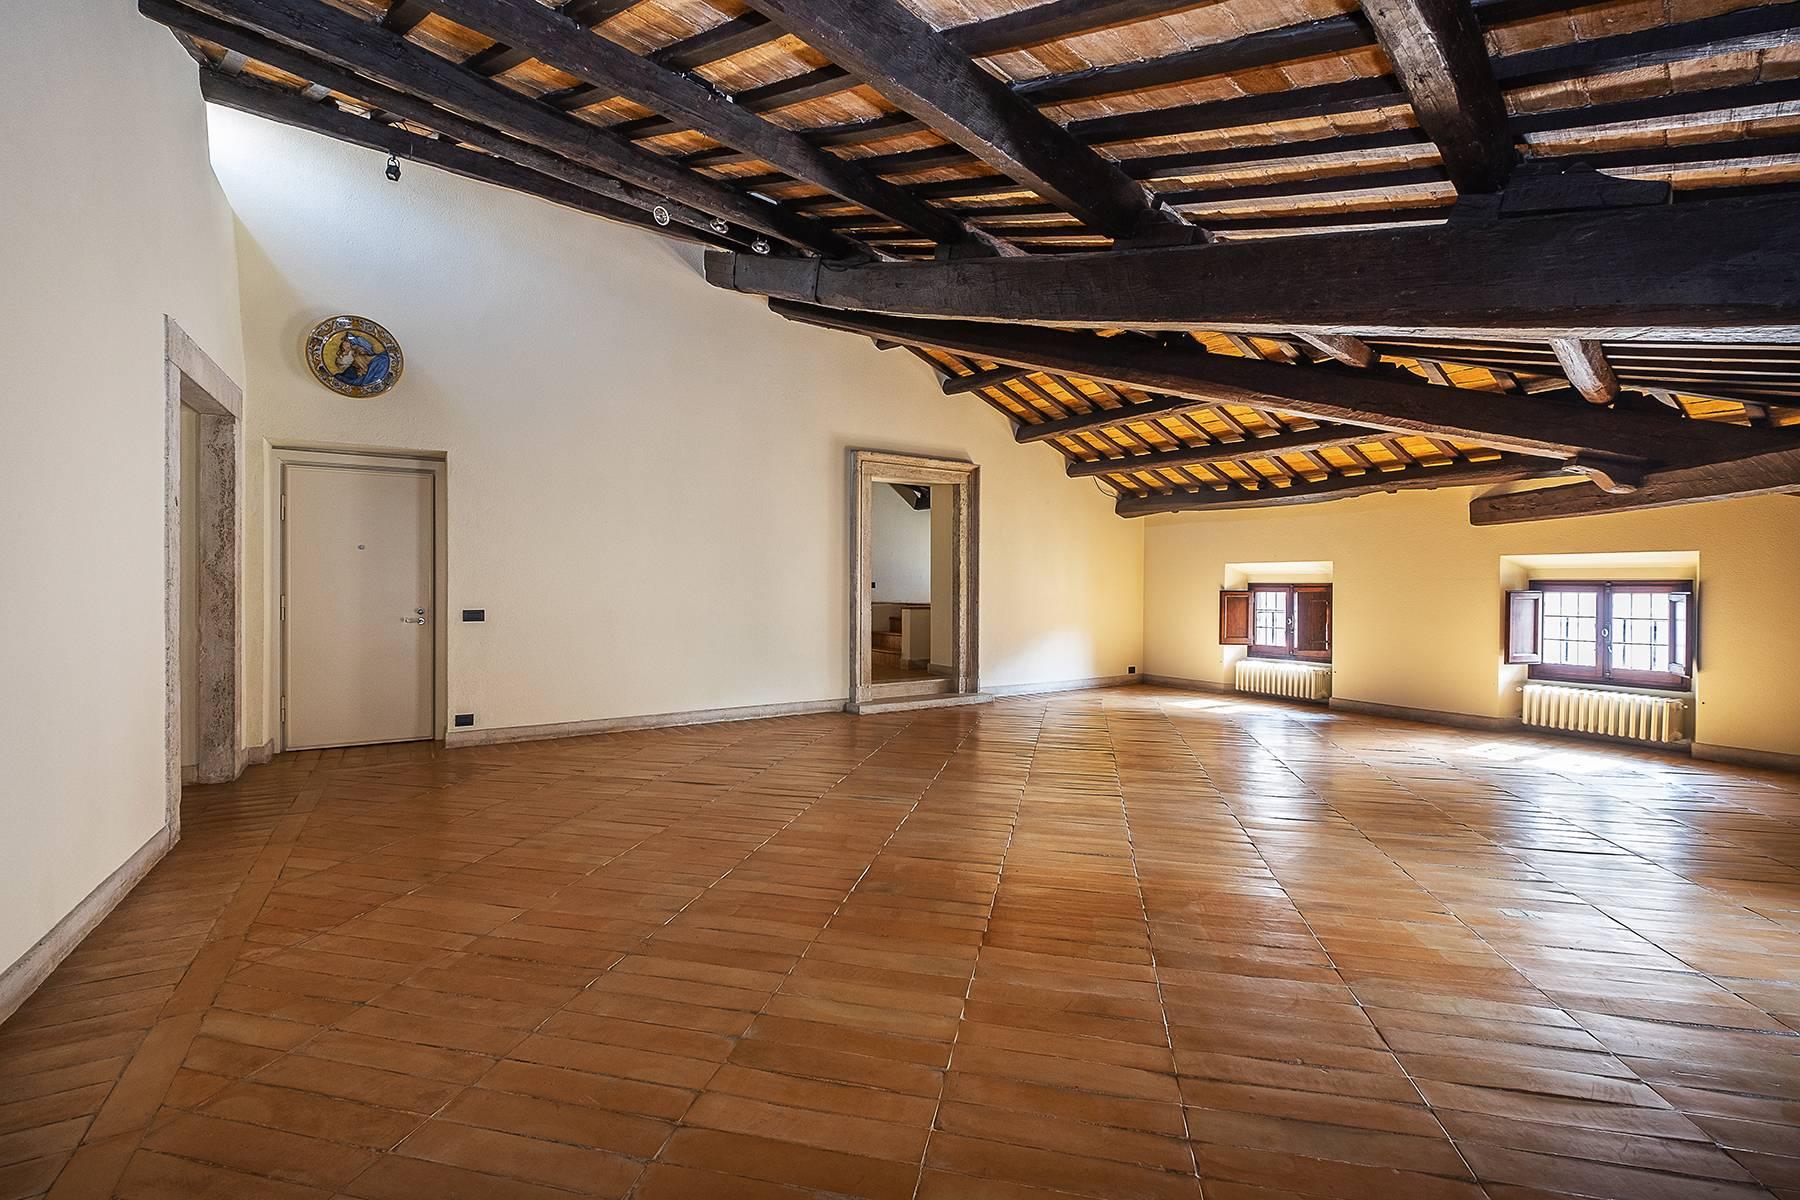 Esclusivo appartamento in centro storico con vista sui tetti di Roma - 13